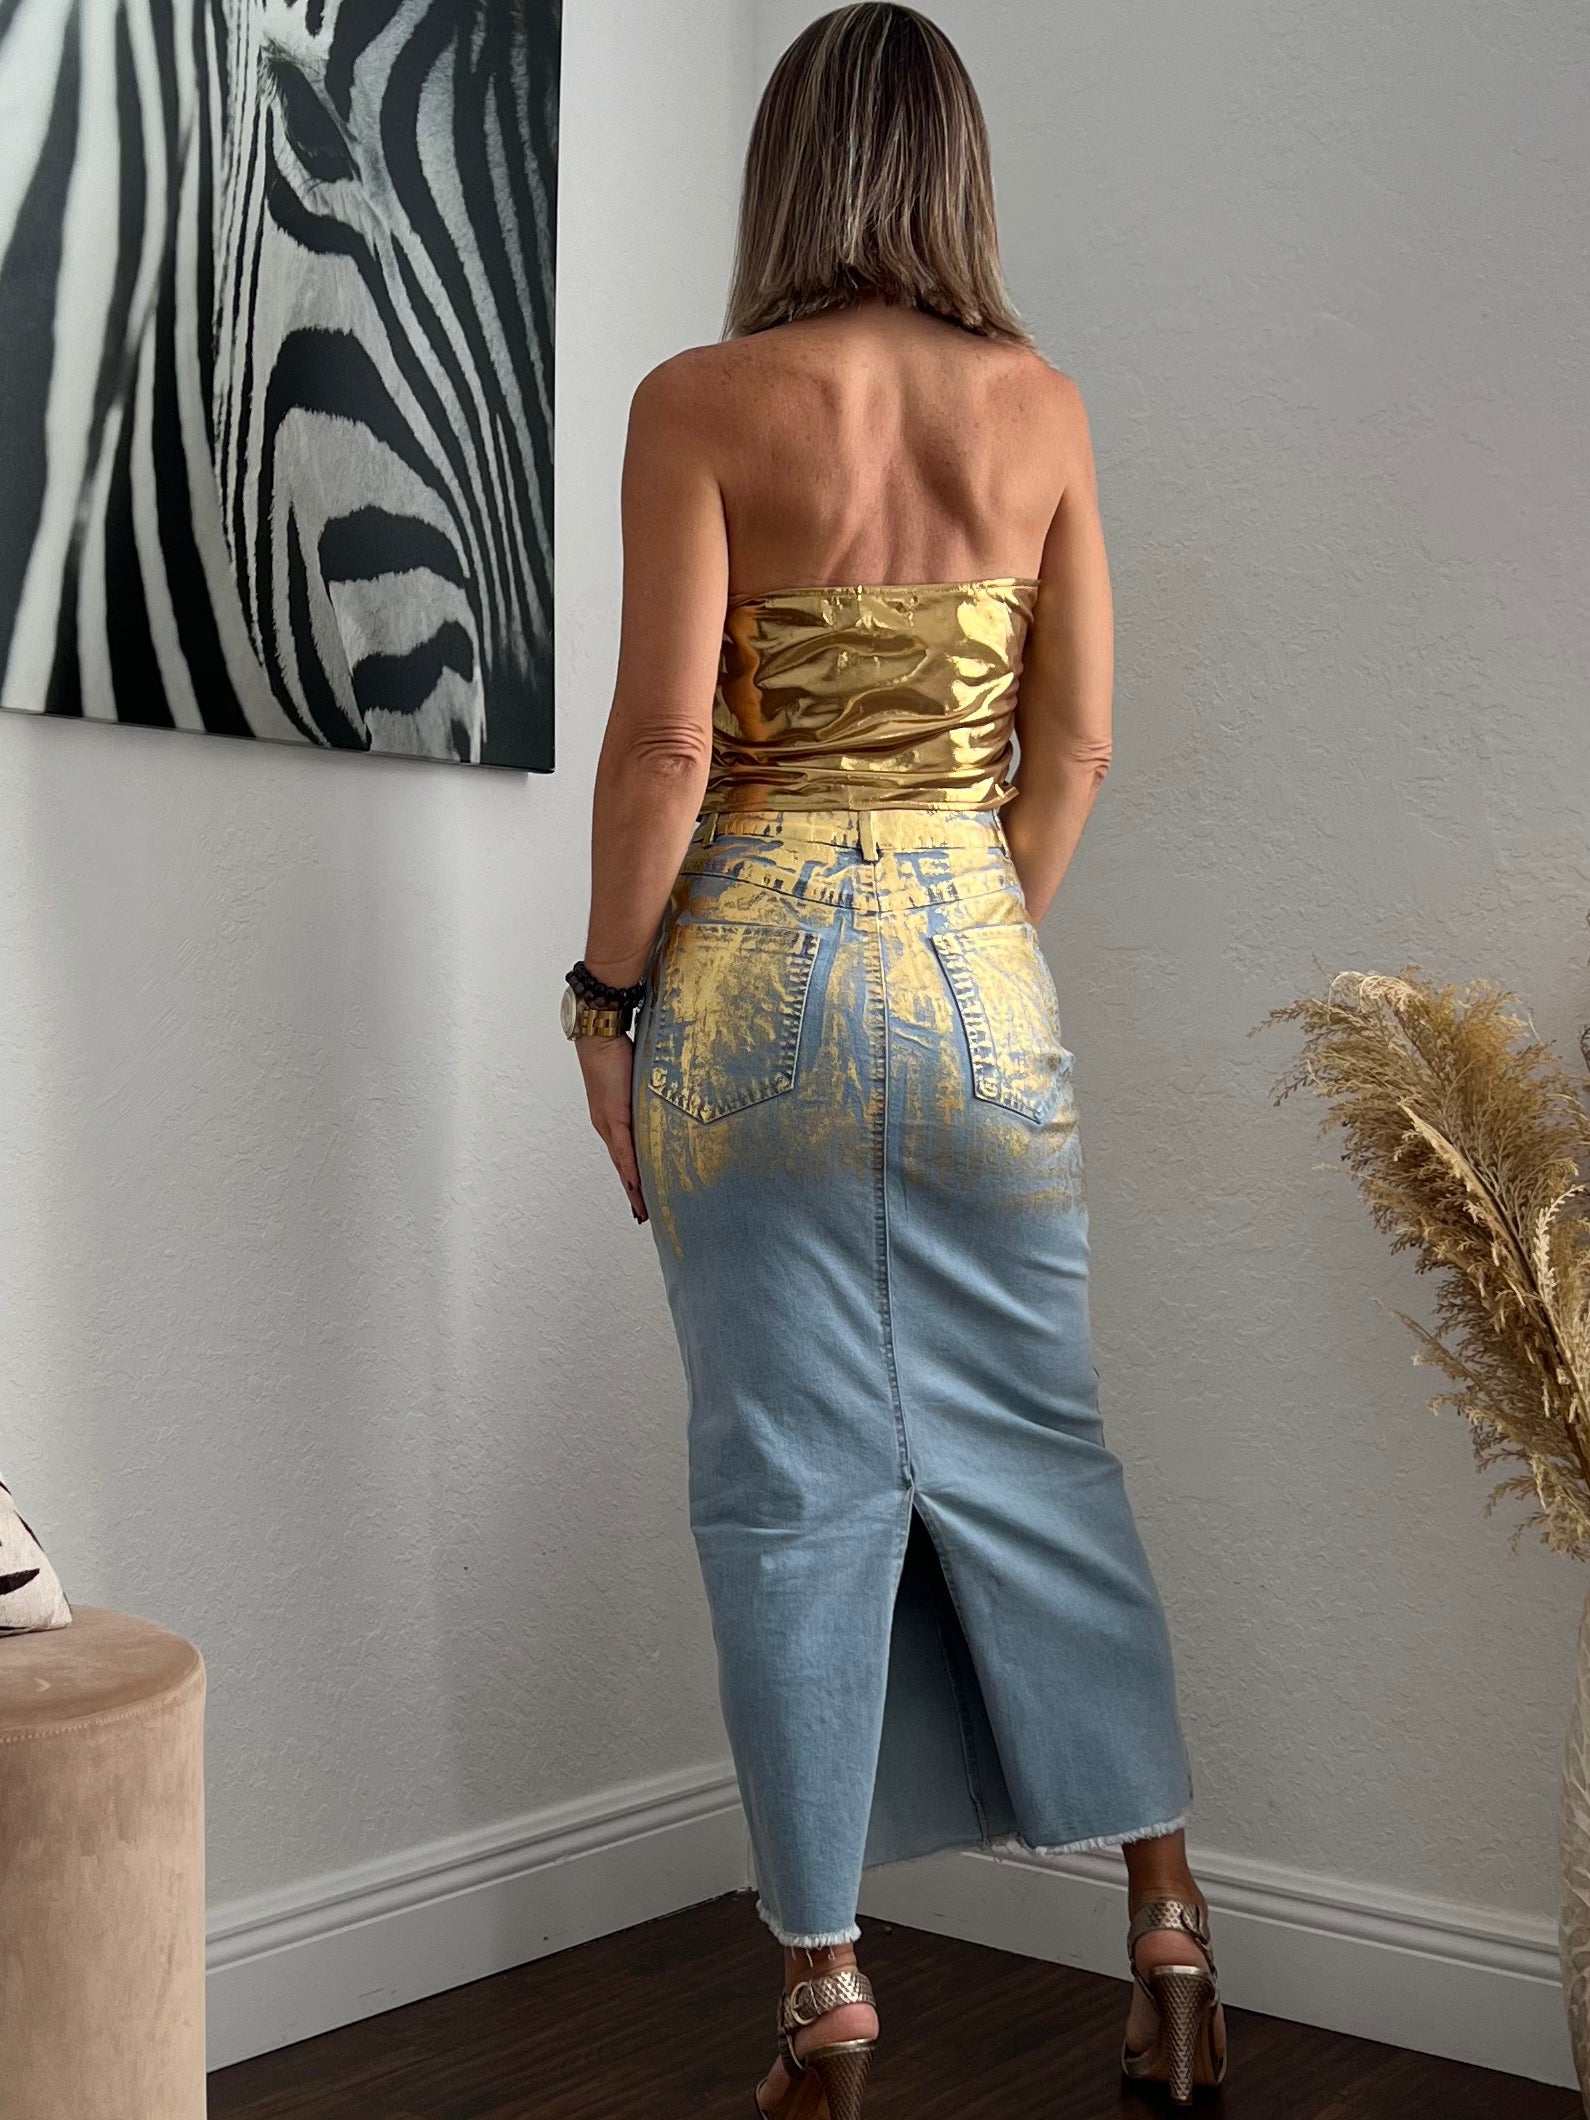 gold Metallic Maxi skirt and top